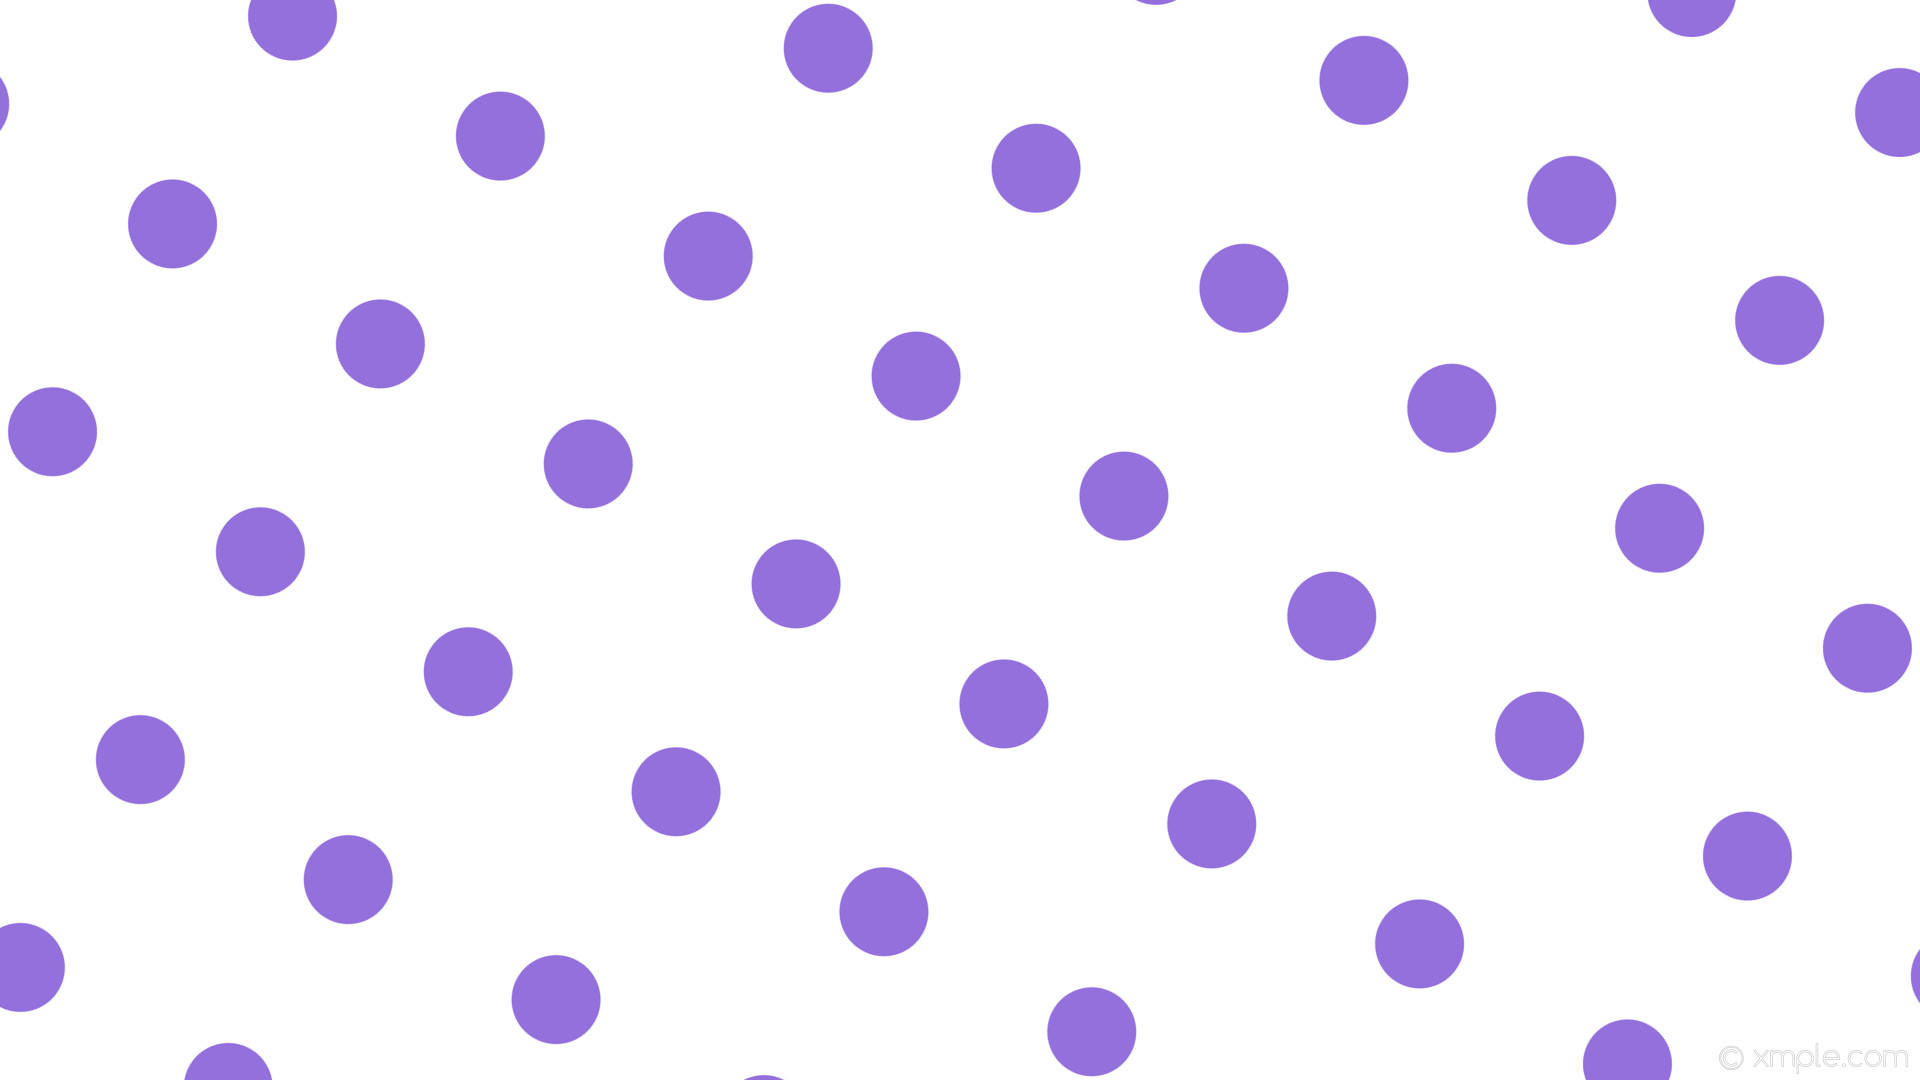 1920x1080 wallpaper white polka dots purple spots medium purple #ffffff #9370db 150Â°  89px 240px